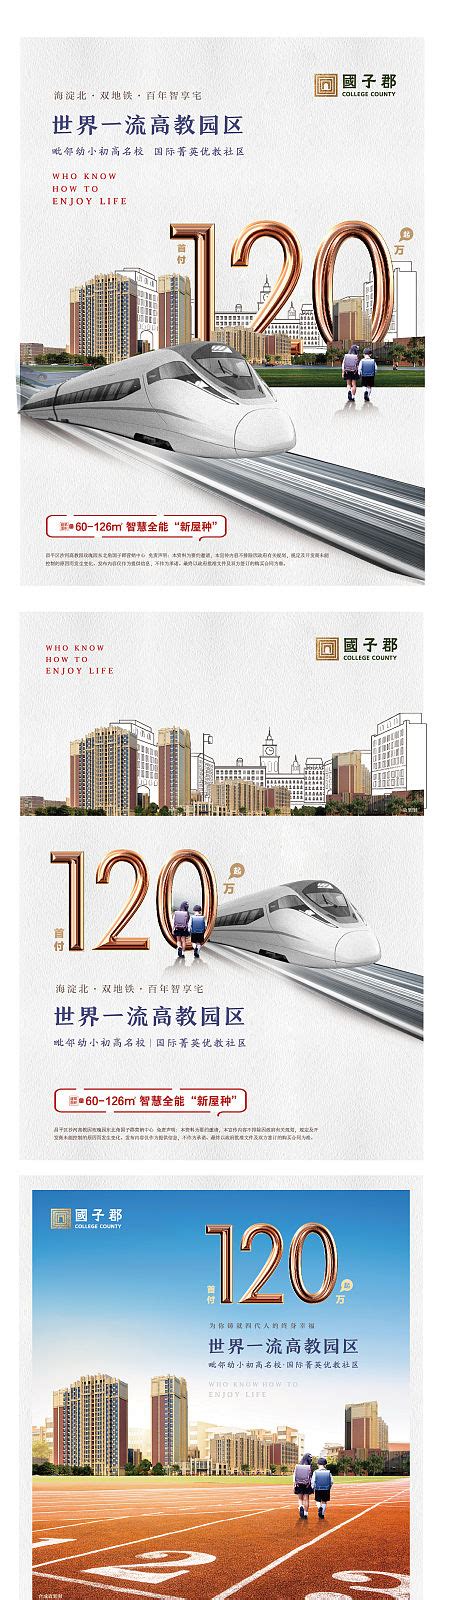 杭州西湖断桥剪影房地产宣传单DMAI广告设计素材海报模板免费下载-享设计